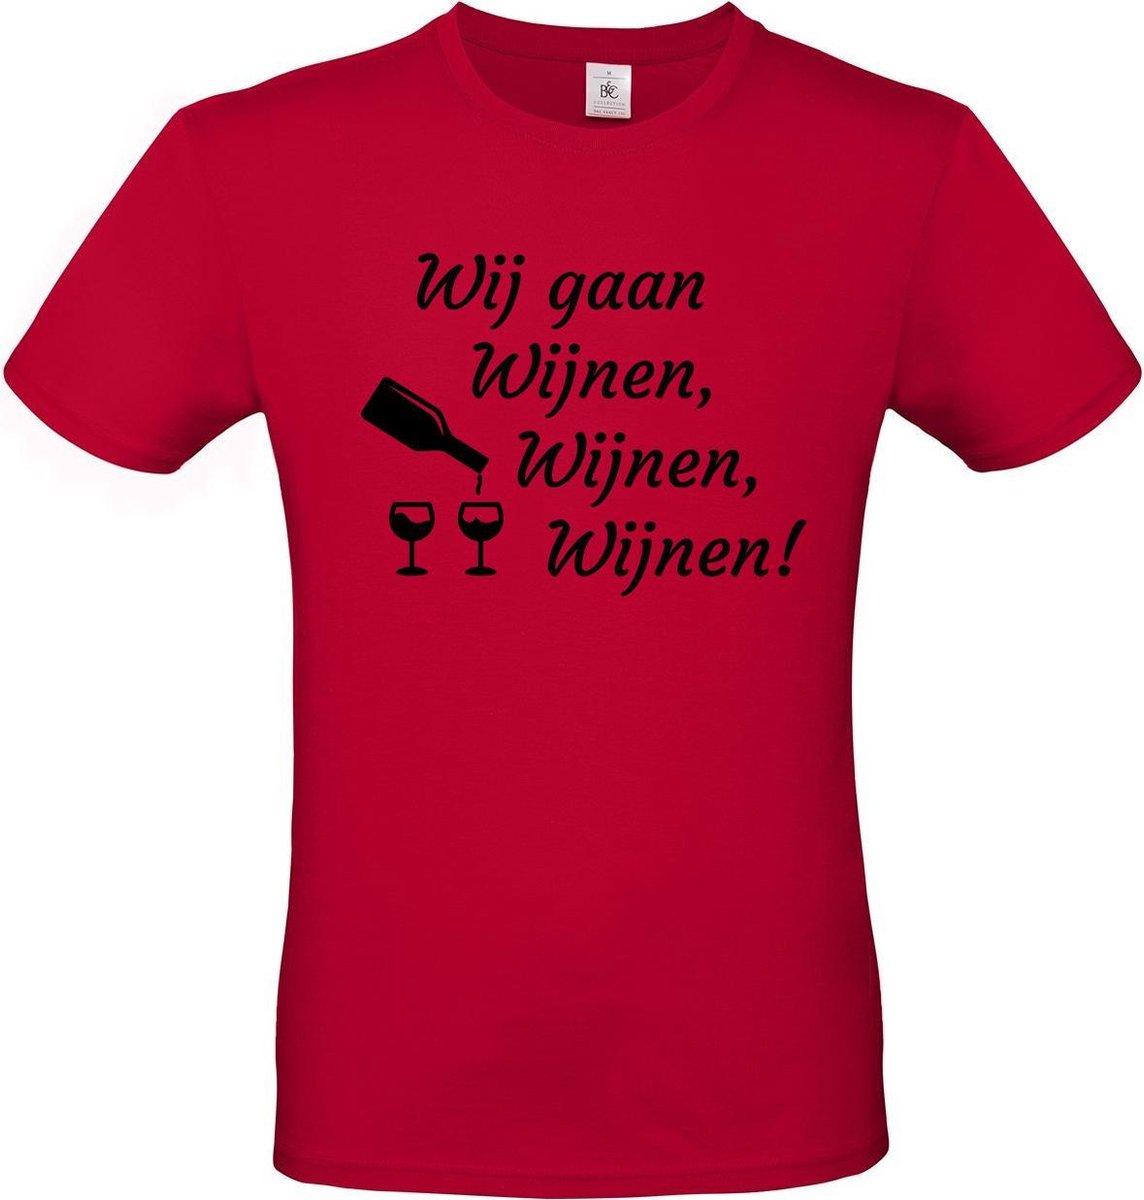 T-shirt met opdruk “Wij gaan Wijnen, wijnen, wijnen!” | Meiland collectie | Rood T-shirt met zwarte opdruk. | Herojodeals